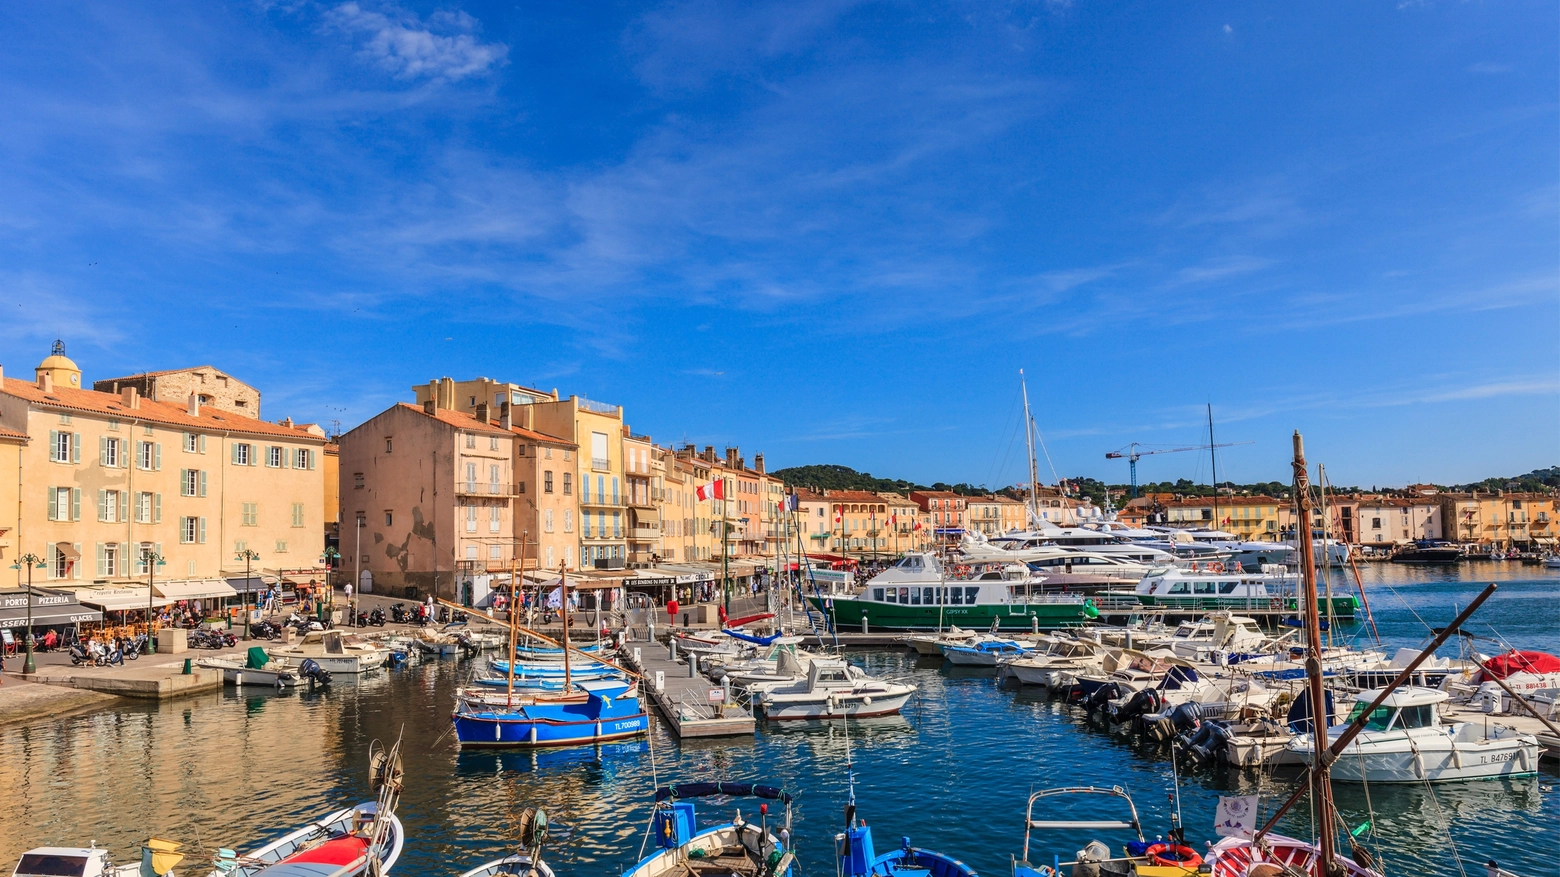 L'ultima da Saint Tropez: turista italiano sarebbe stato inseguito da un cameriere, troppo bassa la mancia da 500 euro